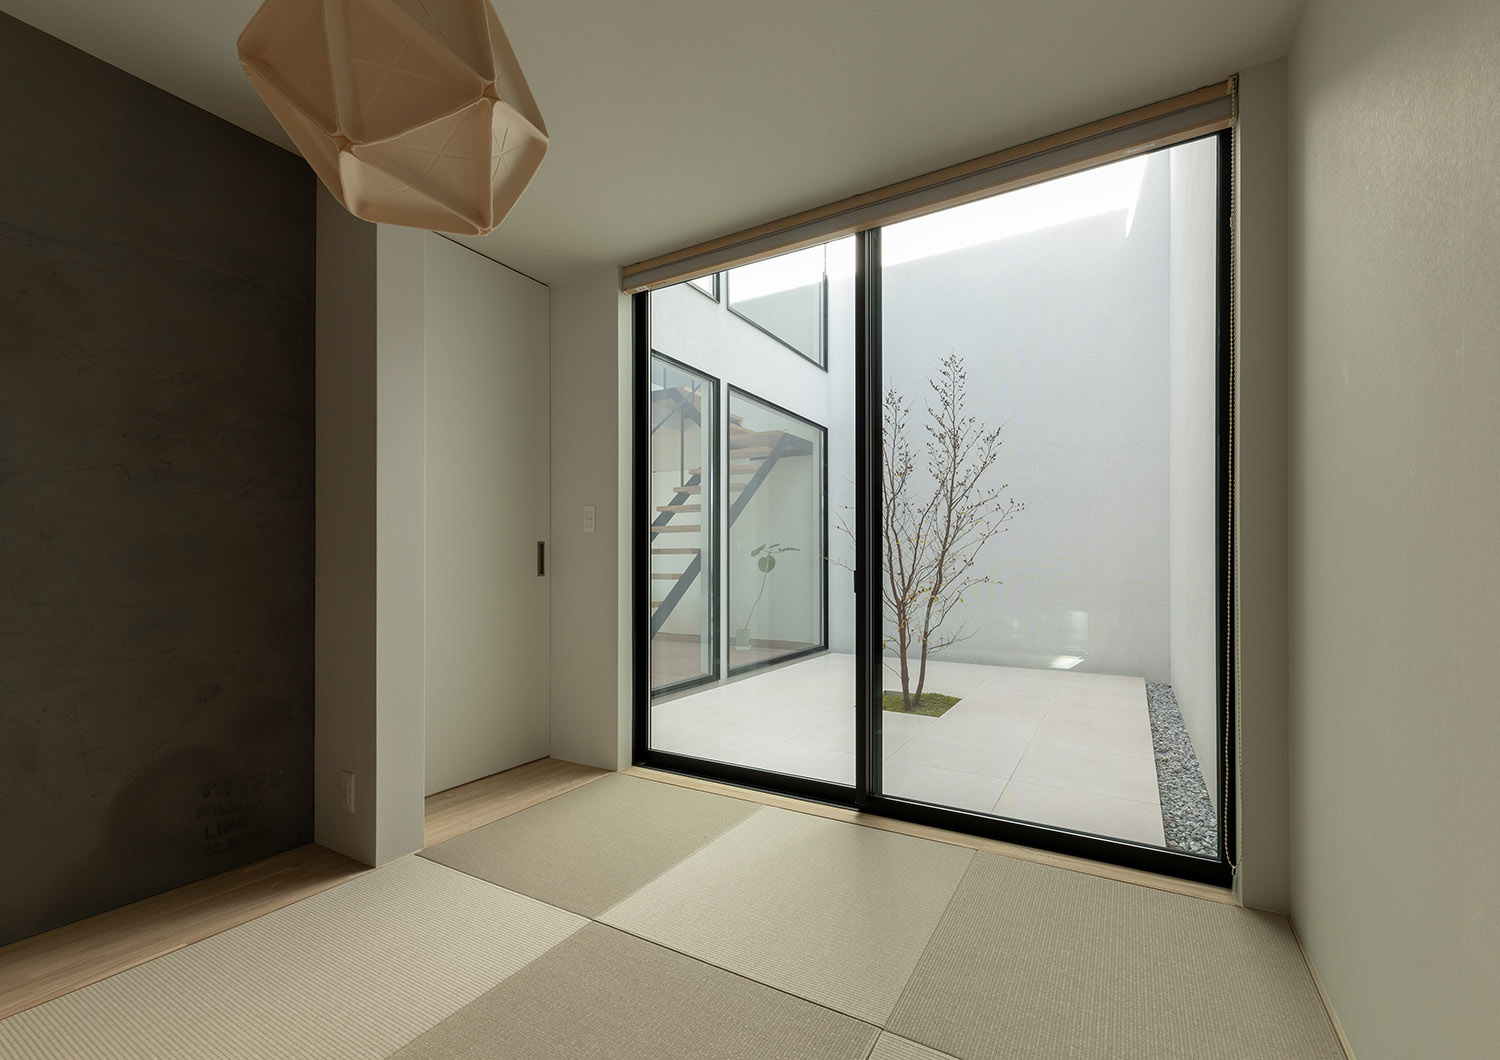 目隠し壁に囲まれた、植栽のある中庭が見える琉球畳の和室・デザイン住宅